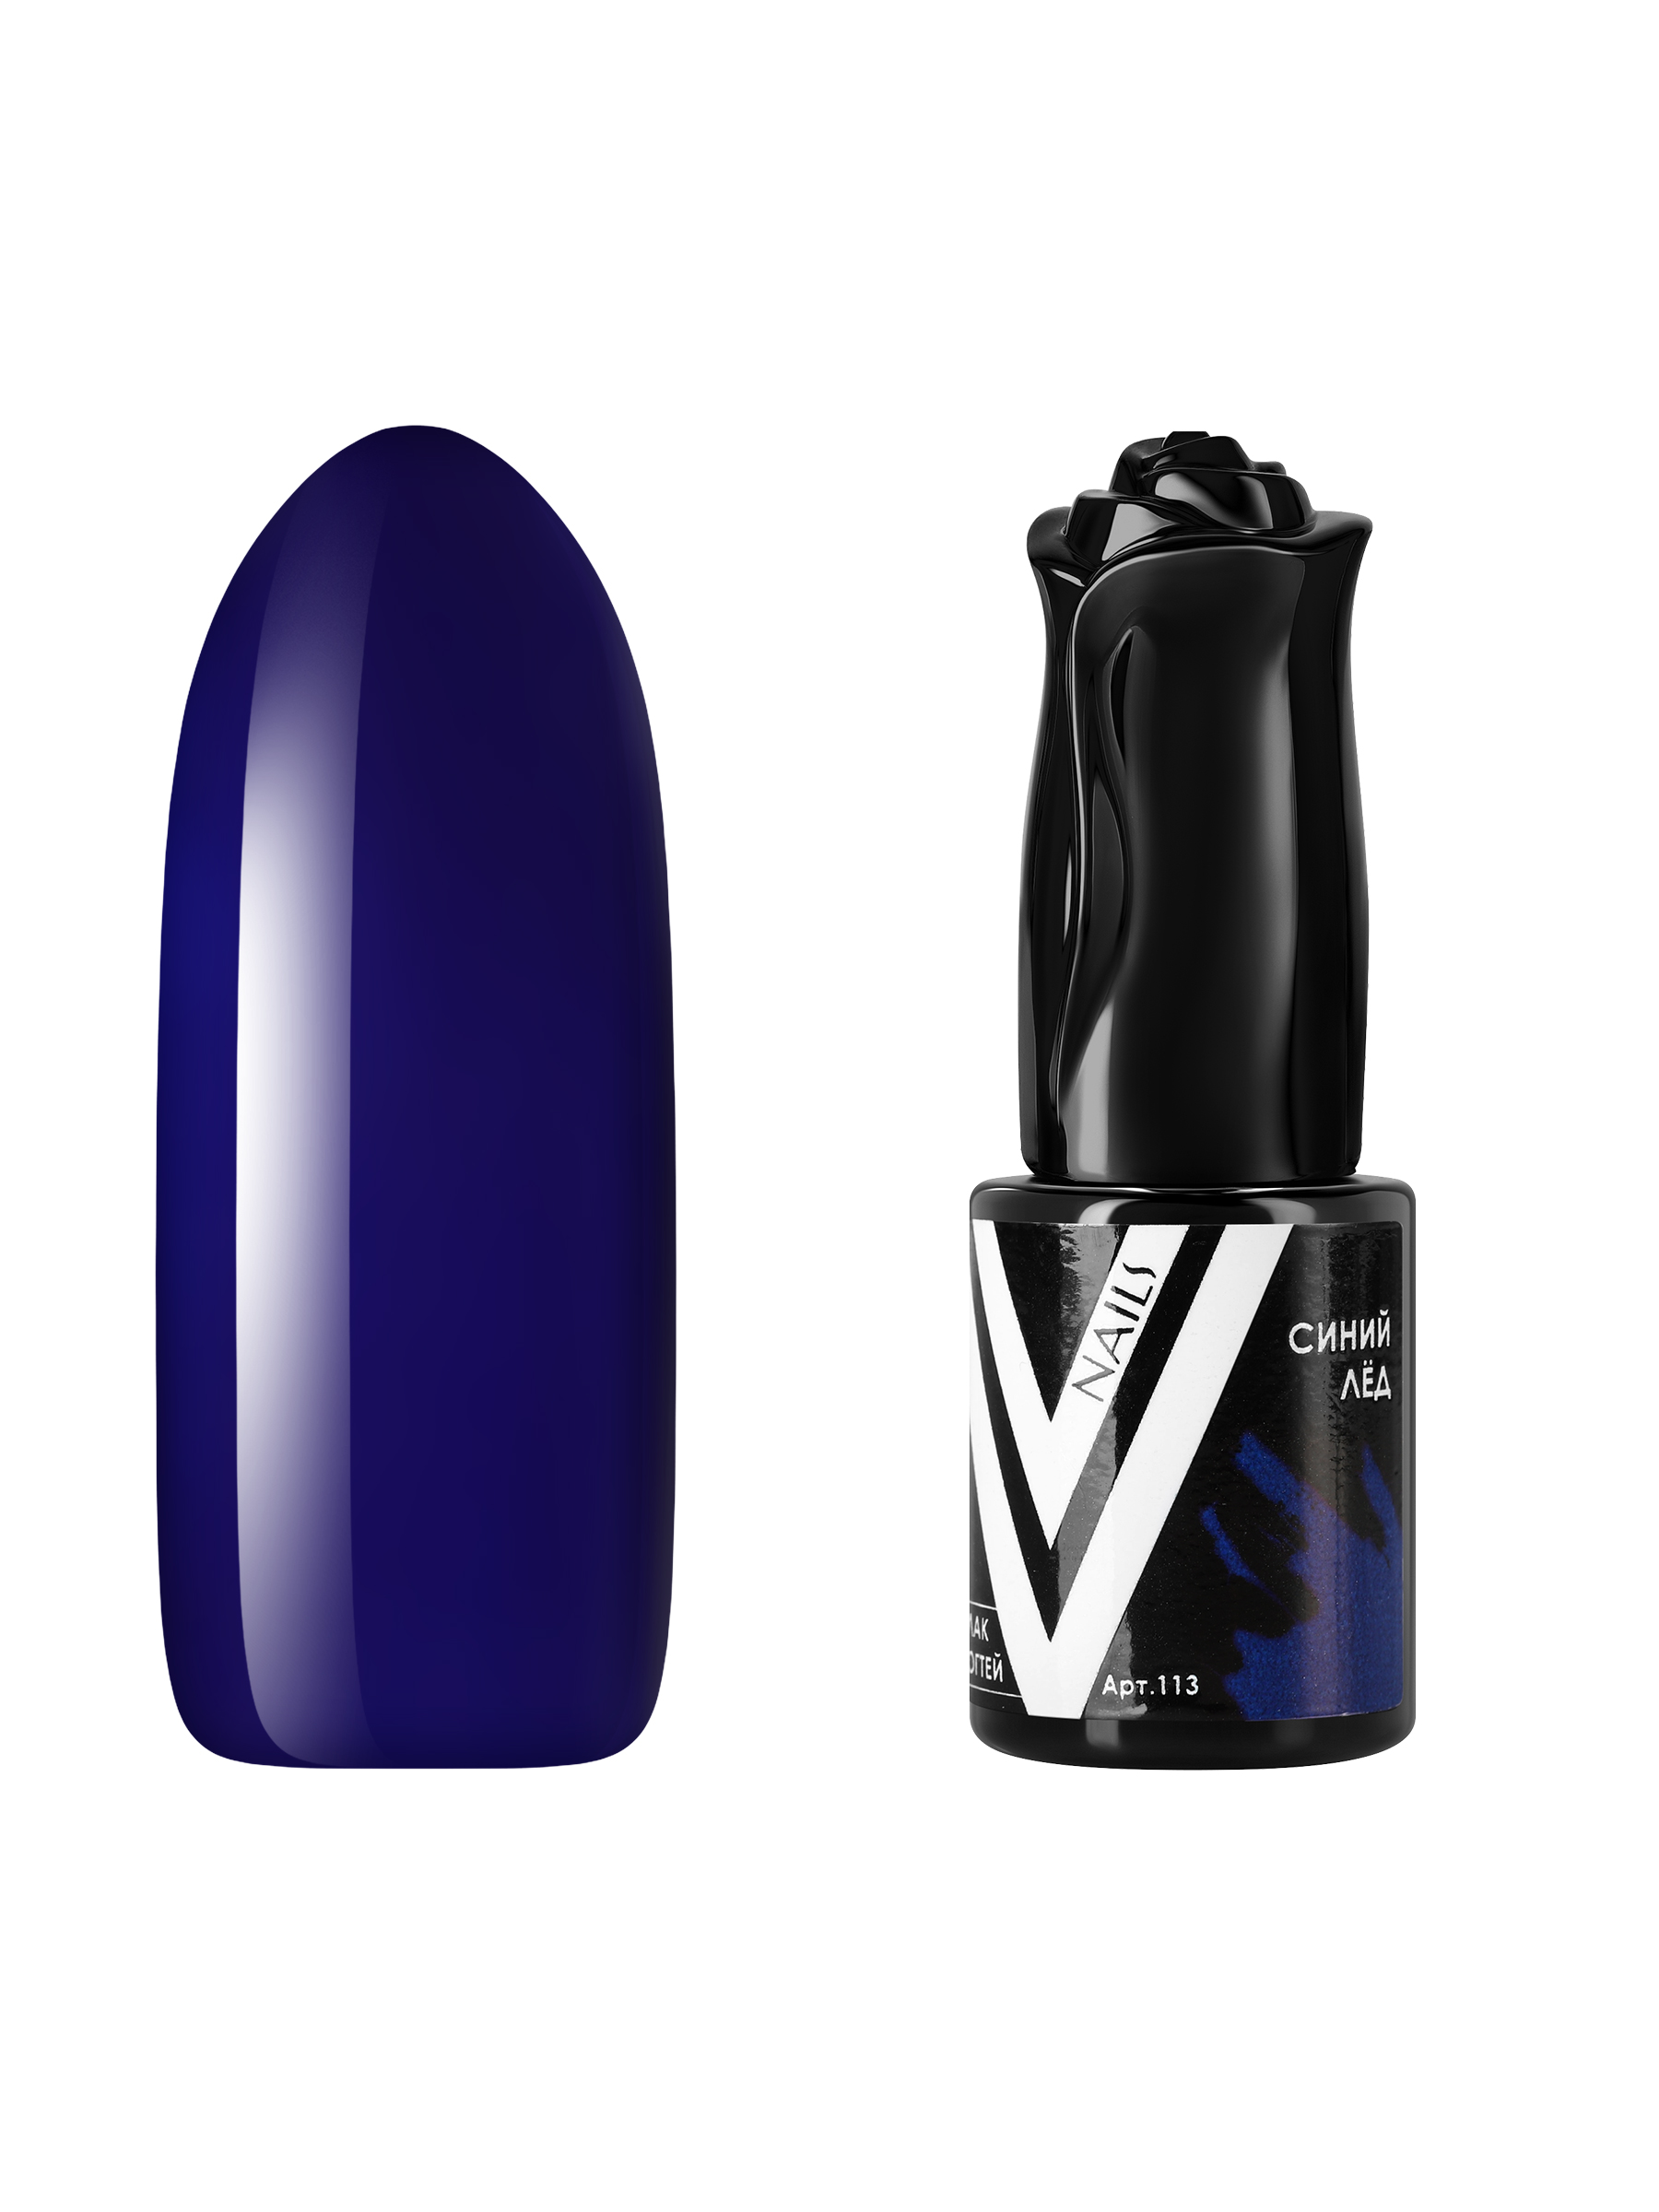 Гель-лак для ногтей Vogue Nails плотный самовыравнивающийся, темный, синий, 10 мл